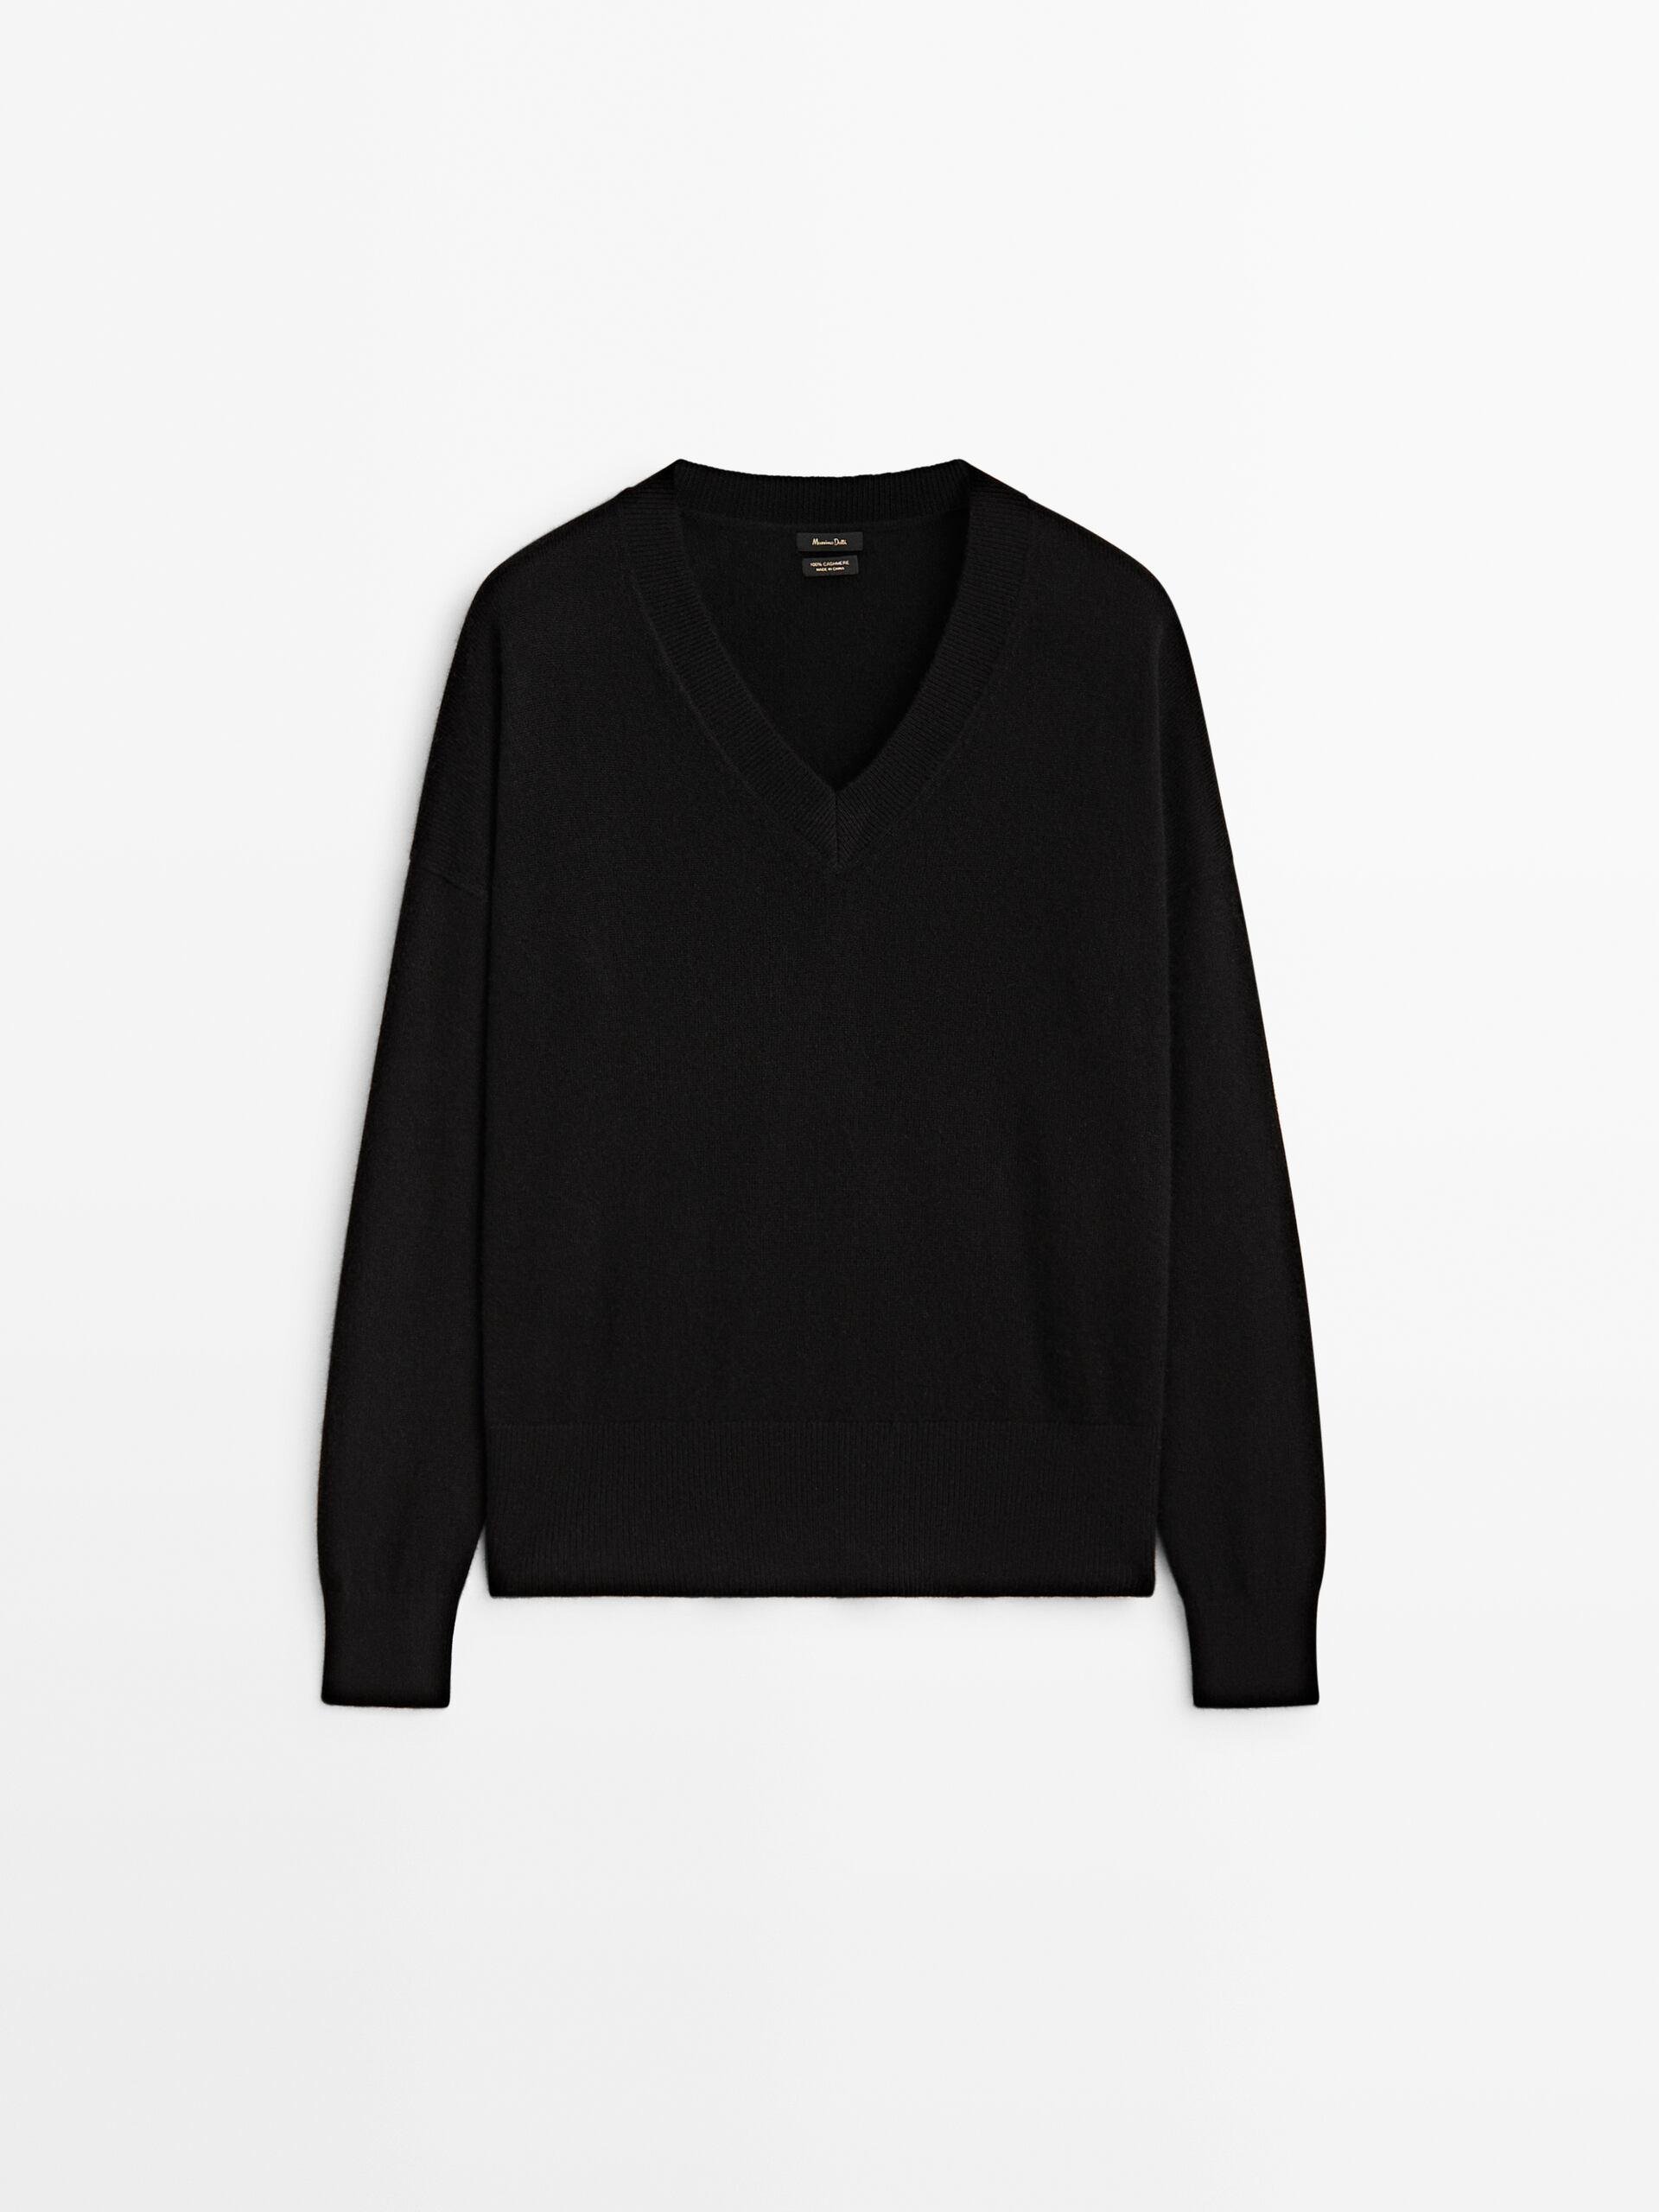 100% cashmere V-neck sweater by ZARA